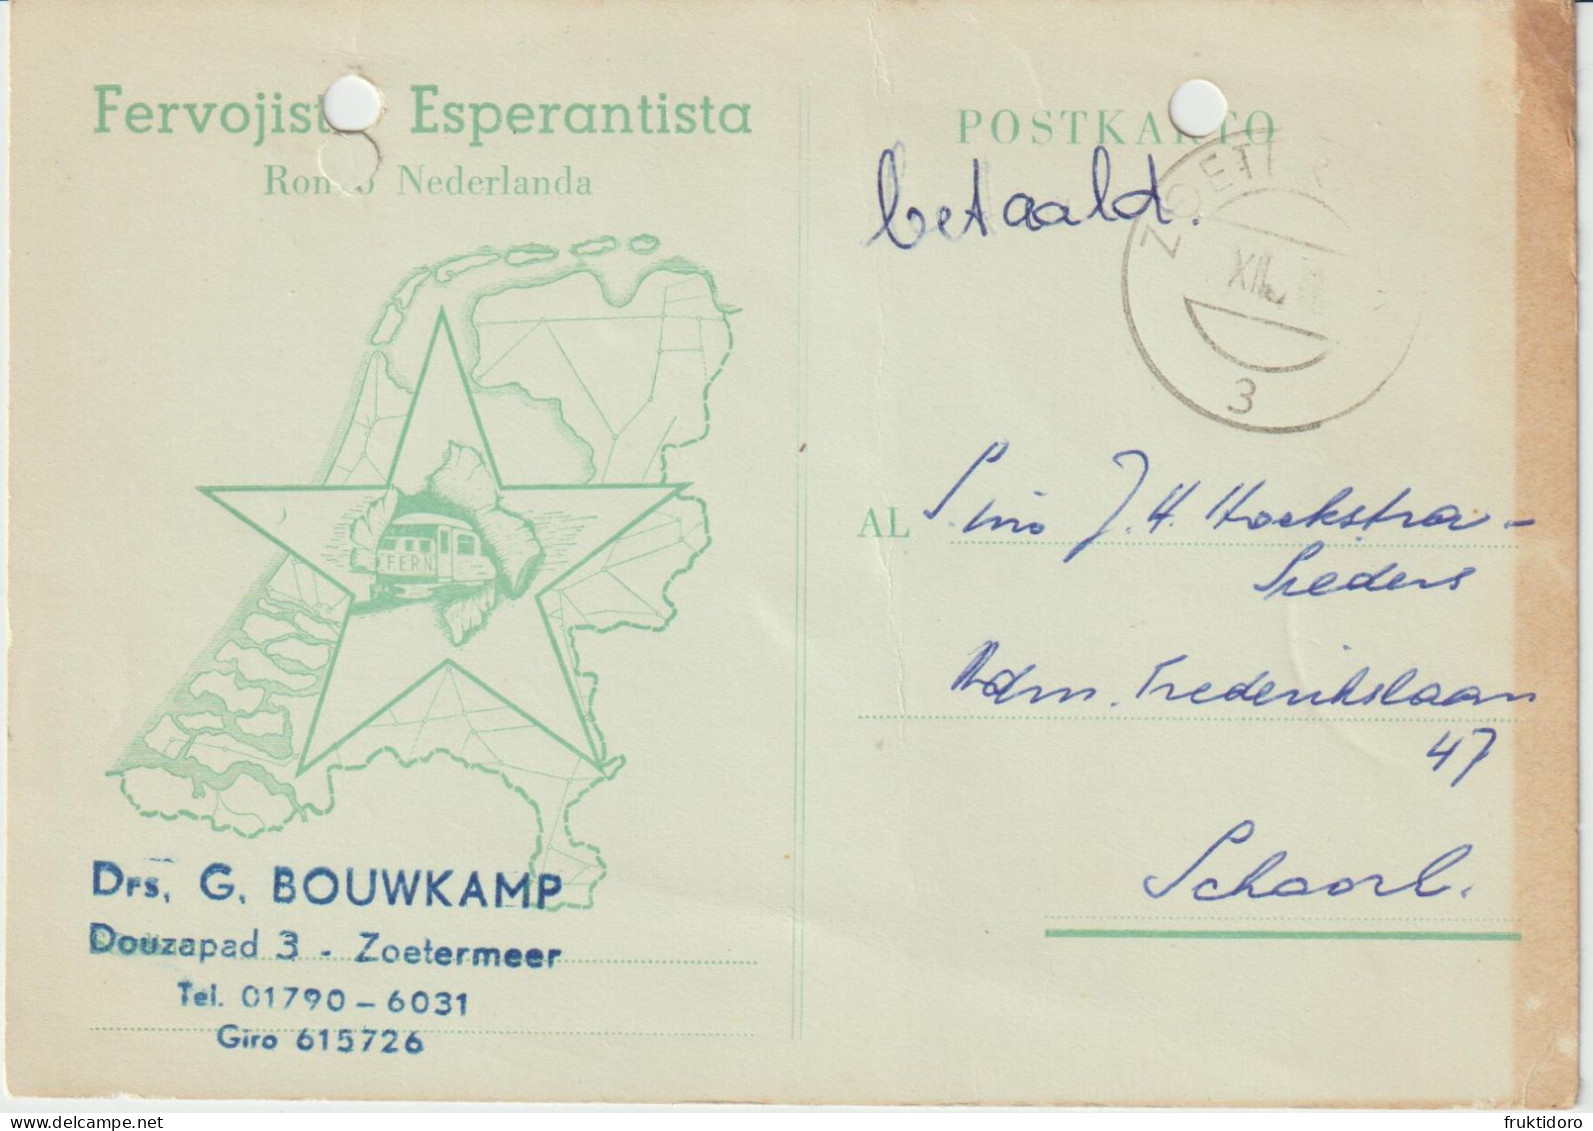 AKEO 13 Esperanto Cards About Railways In The Netherlands - Esperanto-Karto Pri Nederlandaj Fervojistoj - Esperanto